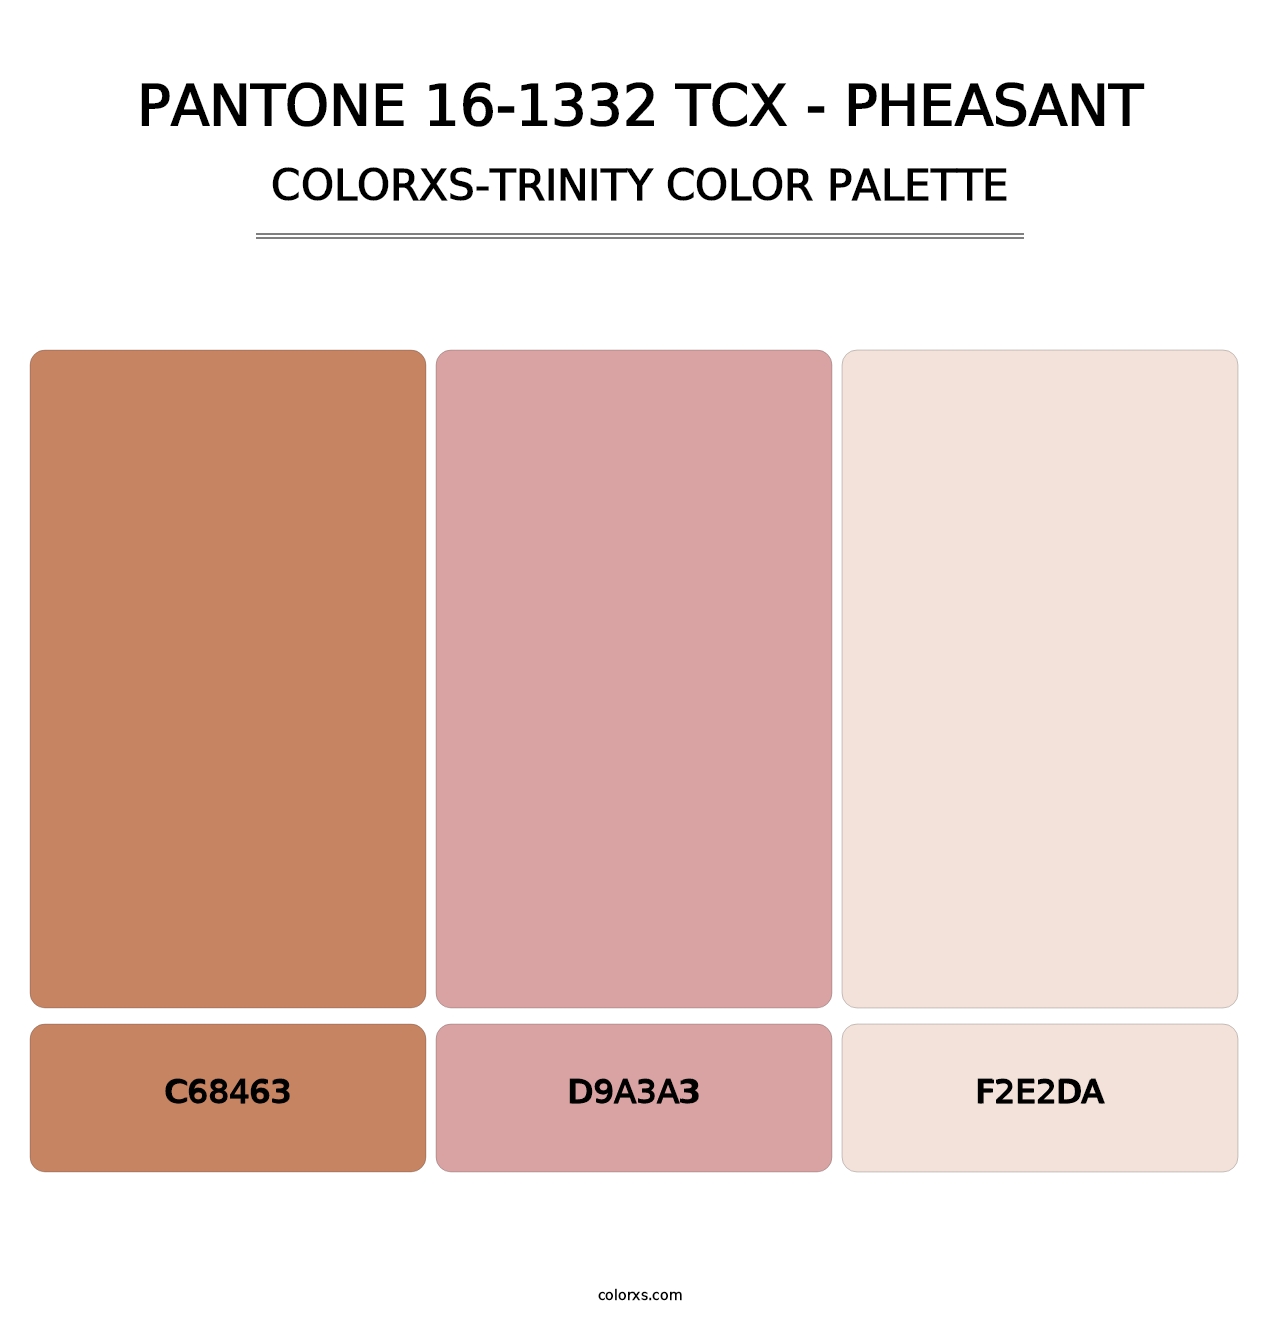 PANTONE 16-1332 TCX - Pheasant - Colorxs Trinity Palette